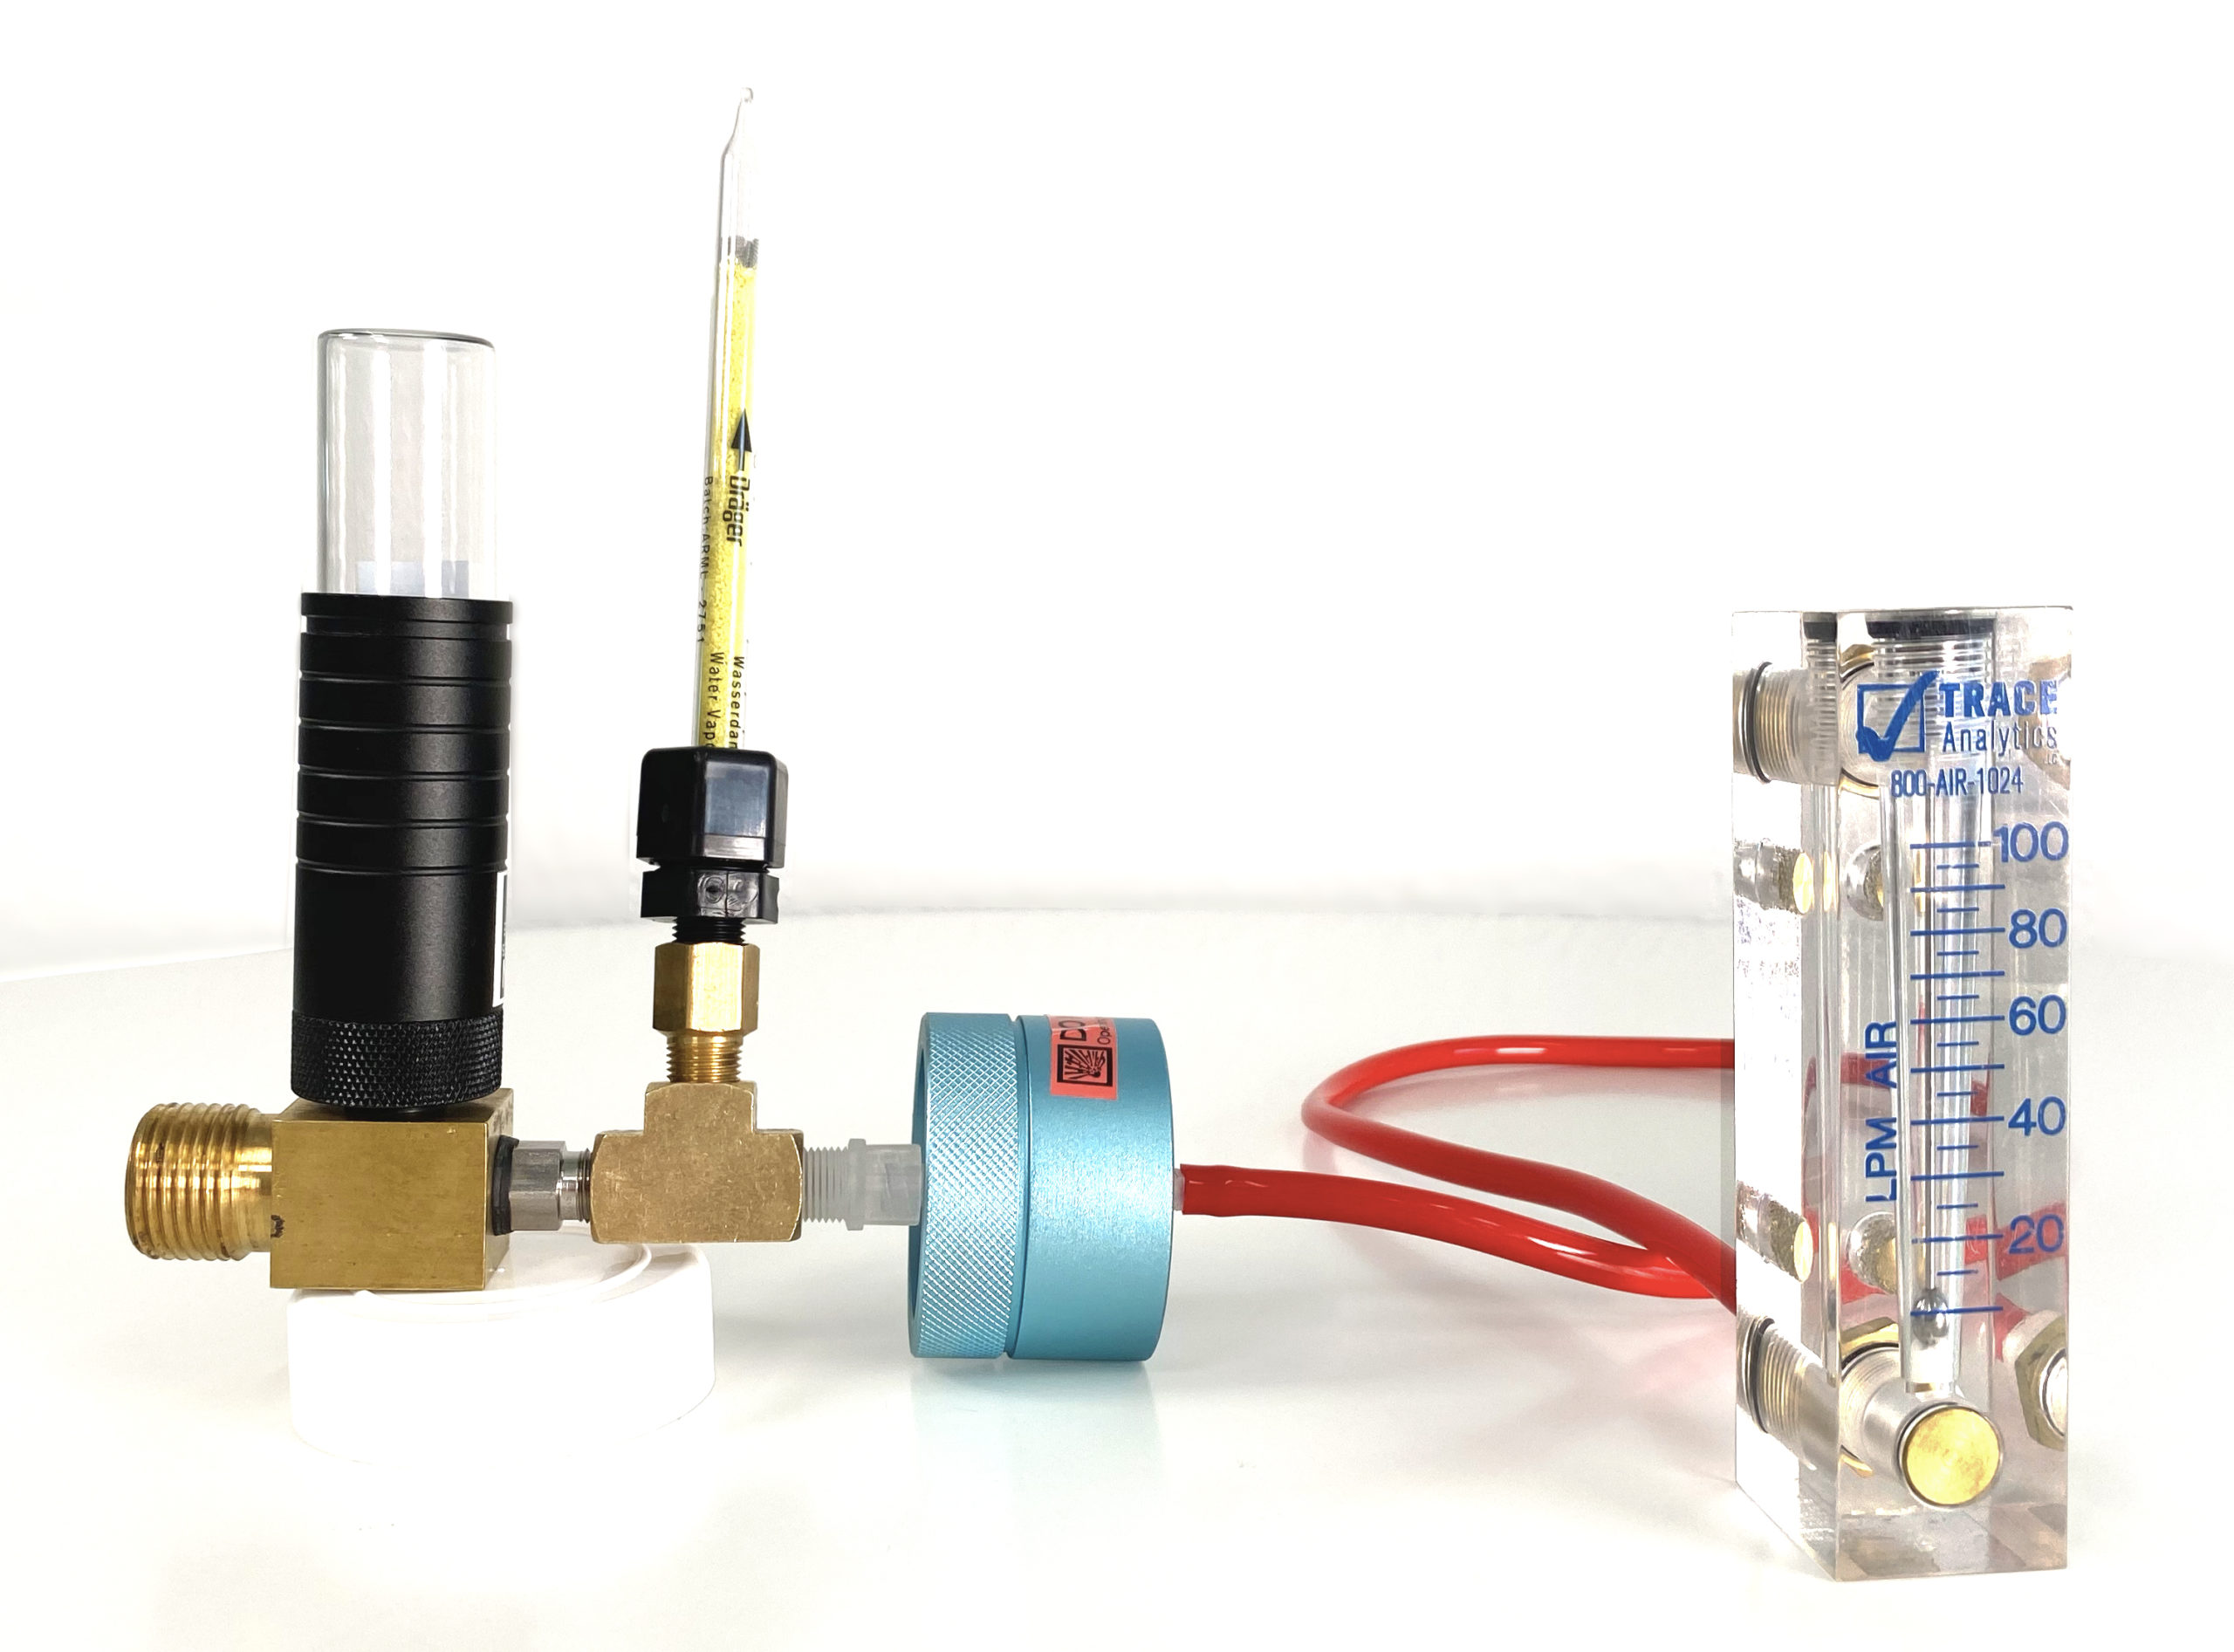 K902c compressed breathing air testing kit